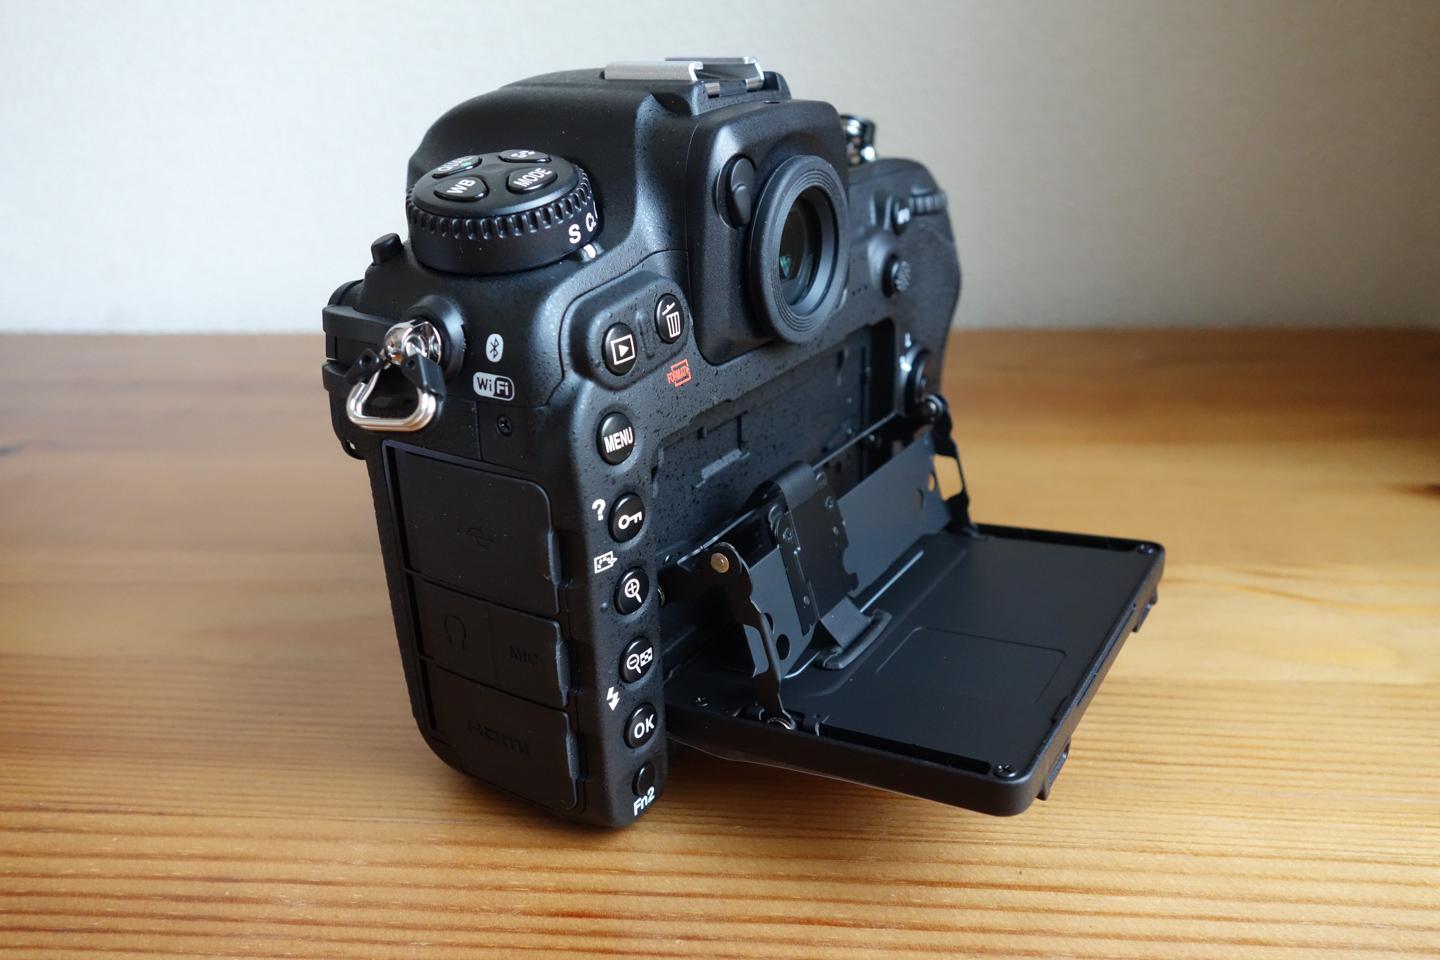 6年ぶりのDXフォーマットフラッグシップ機「Nikon D500」レビュー